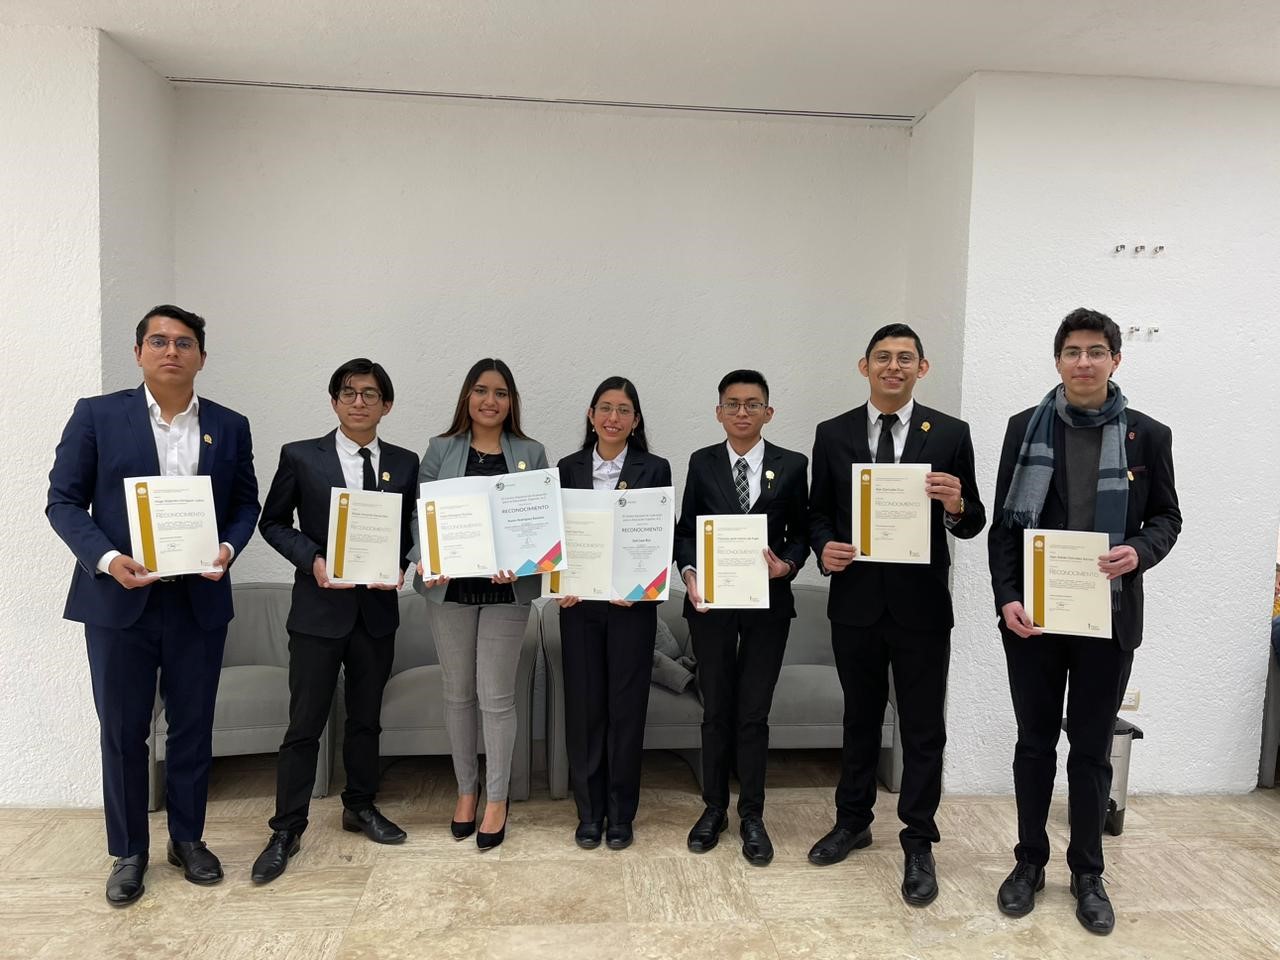 Alumnos de FACPYA reciben reconocimiento del premio CENEVAL al desempeño de excelencia – EGEL